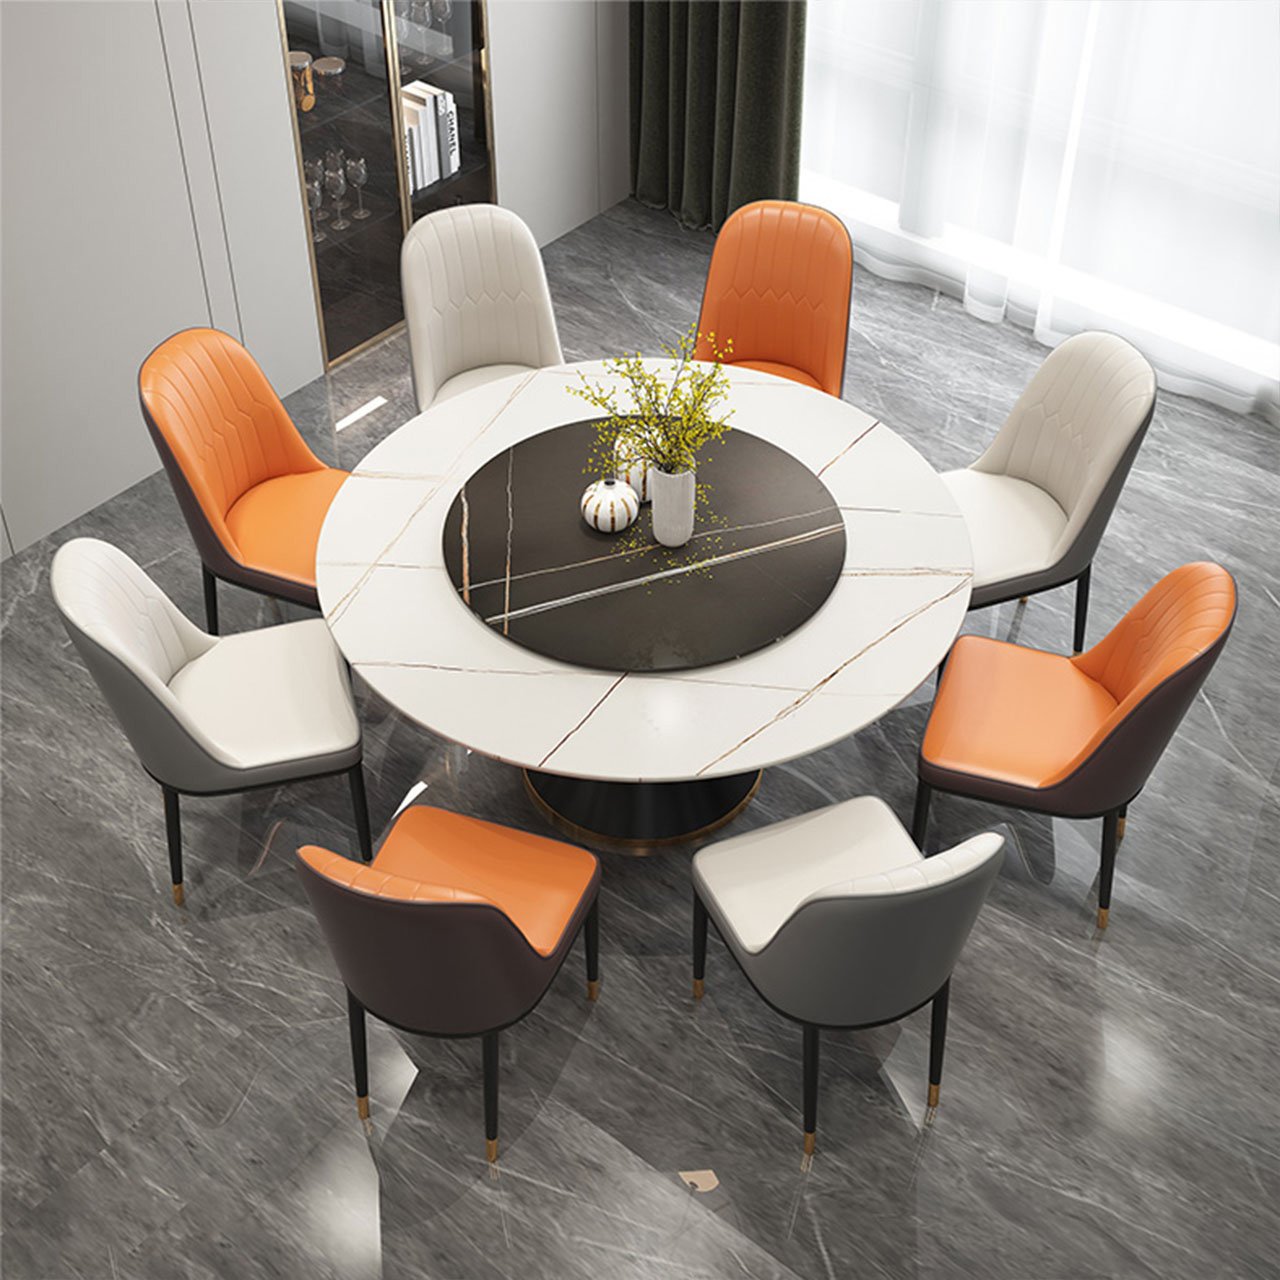 Mẫu bàn ăn tròn 8 ghế với mặt bàn đá ceramic